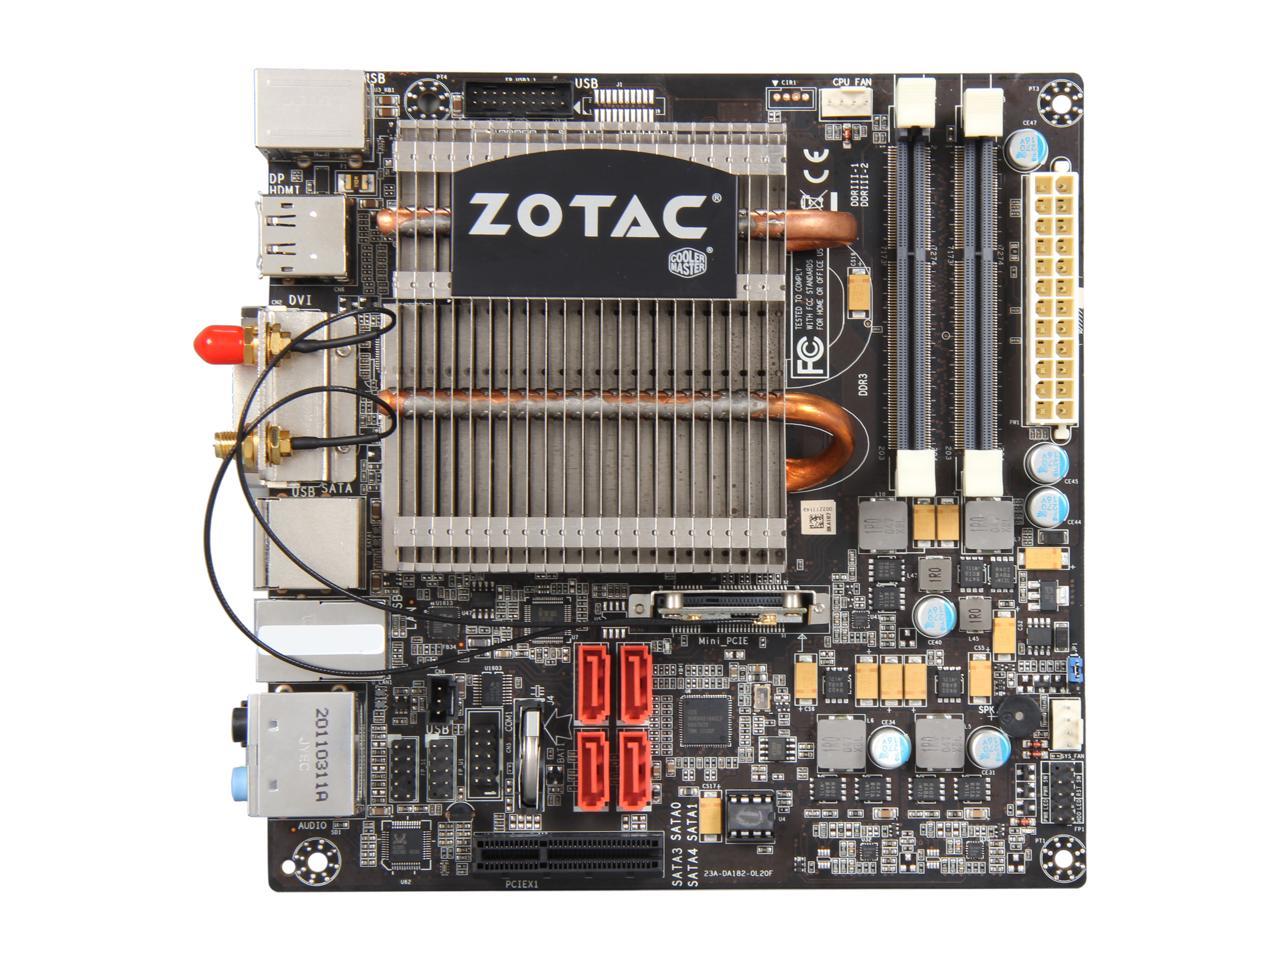 ZOTAC FUSION350-A-E AMD E-350 APU (1.6GHz, Dual-Core) Mini ITX